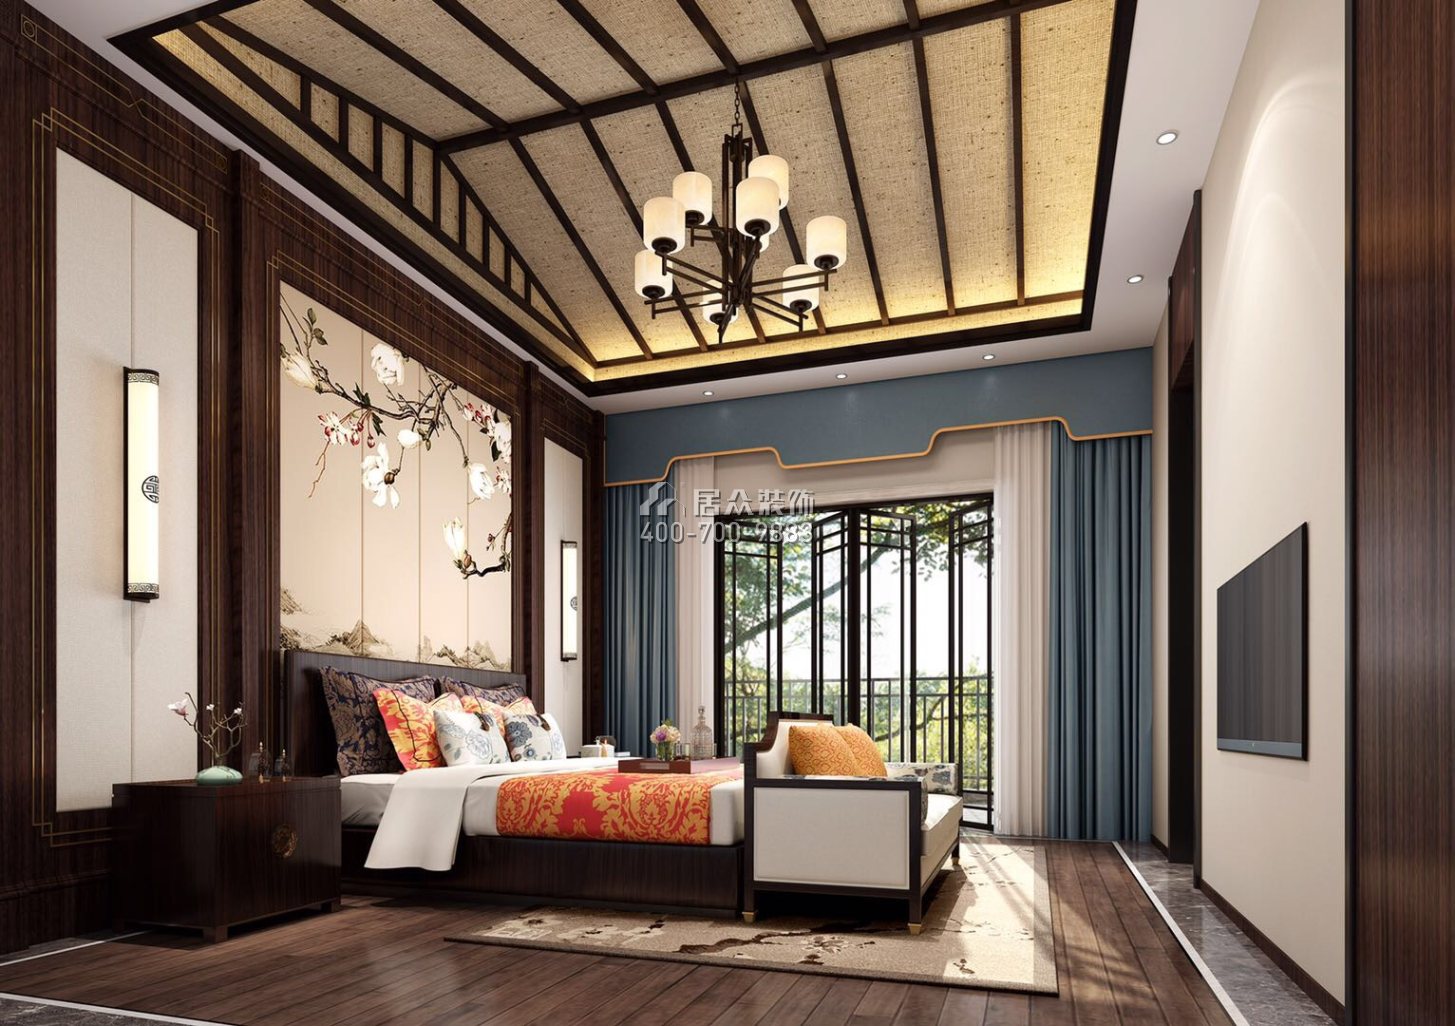 江滨新城白鹭湾800平方米中式风格别墅户型卧室装修效果图